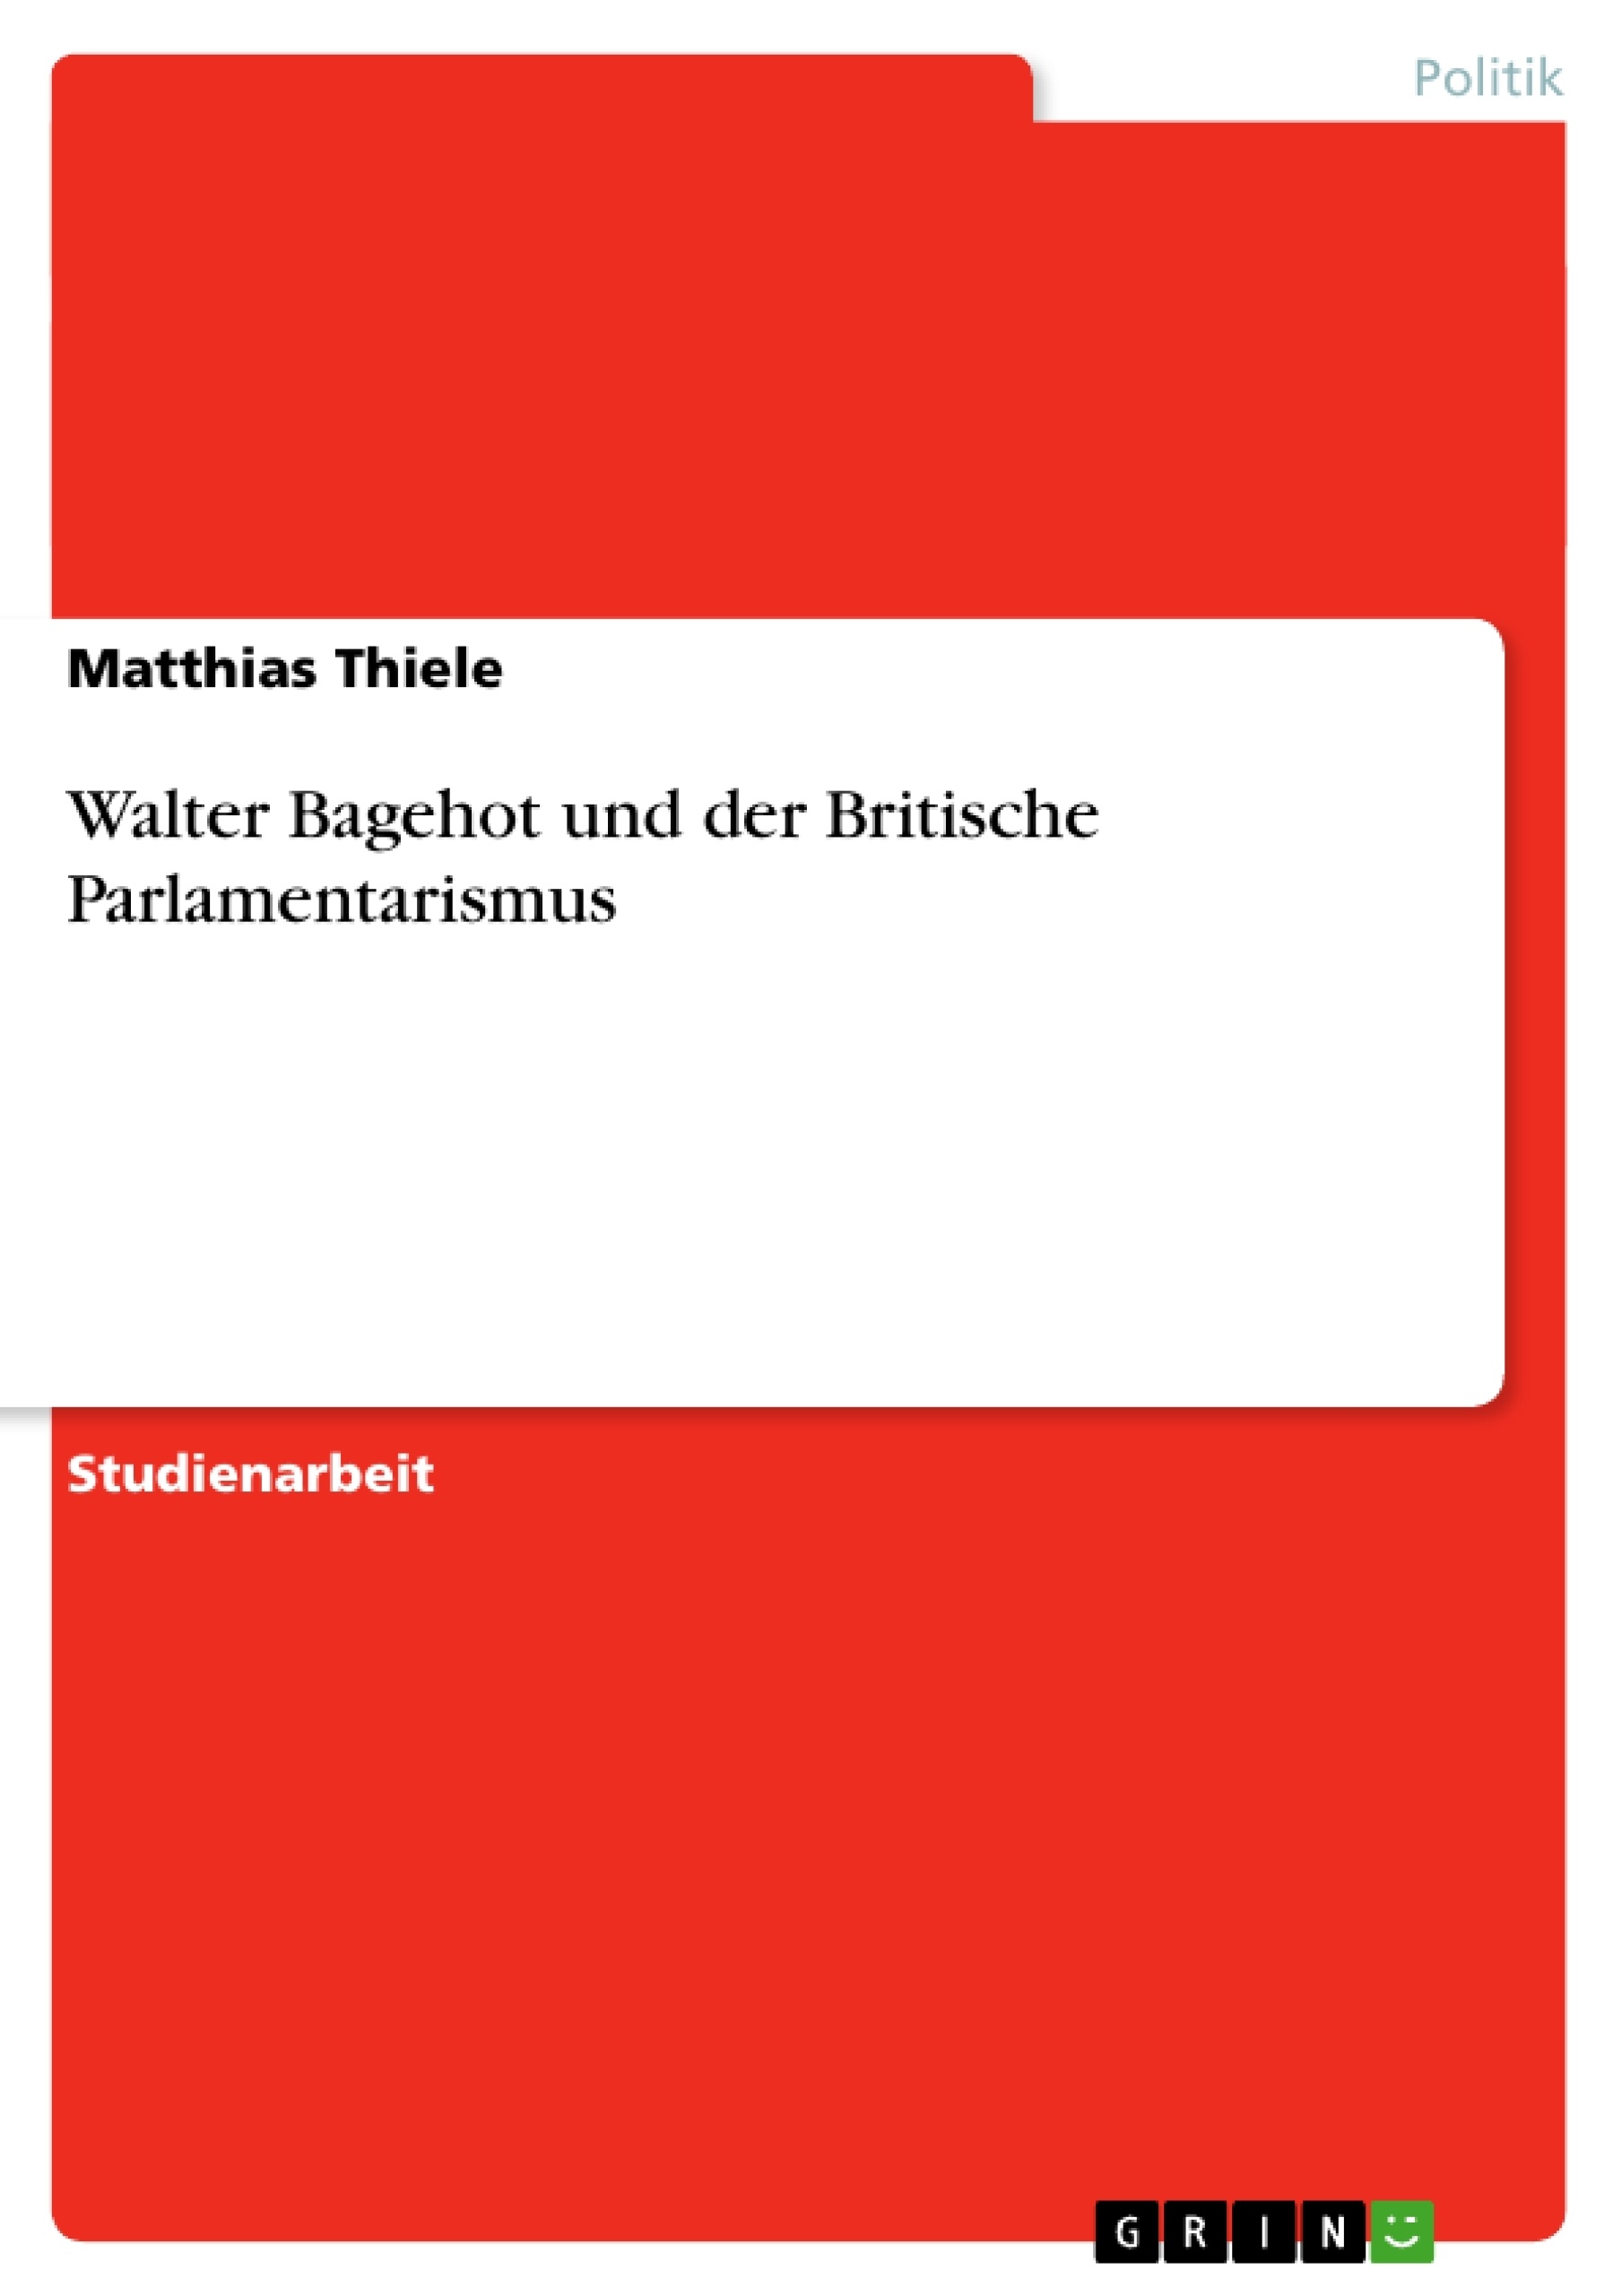 Title: Walter Bagehot und der Britische Parlamentarismus